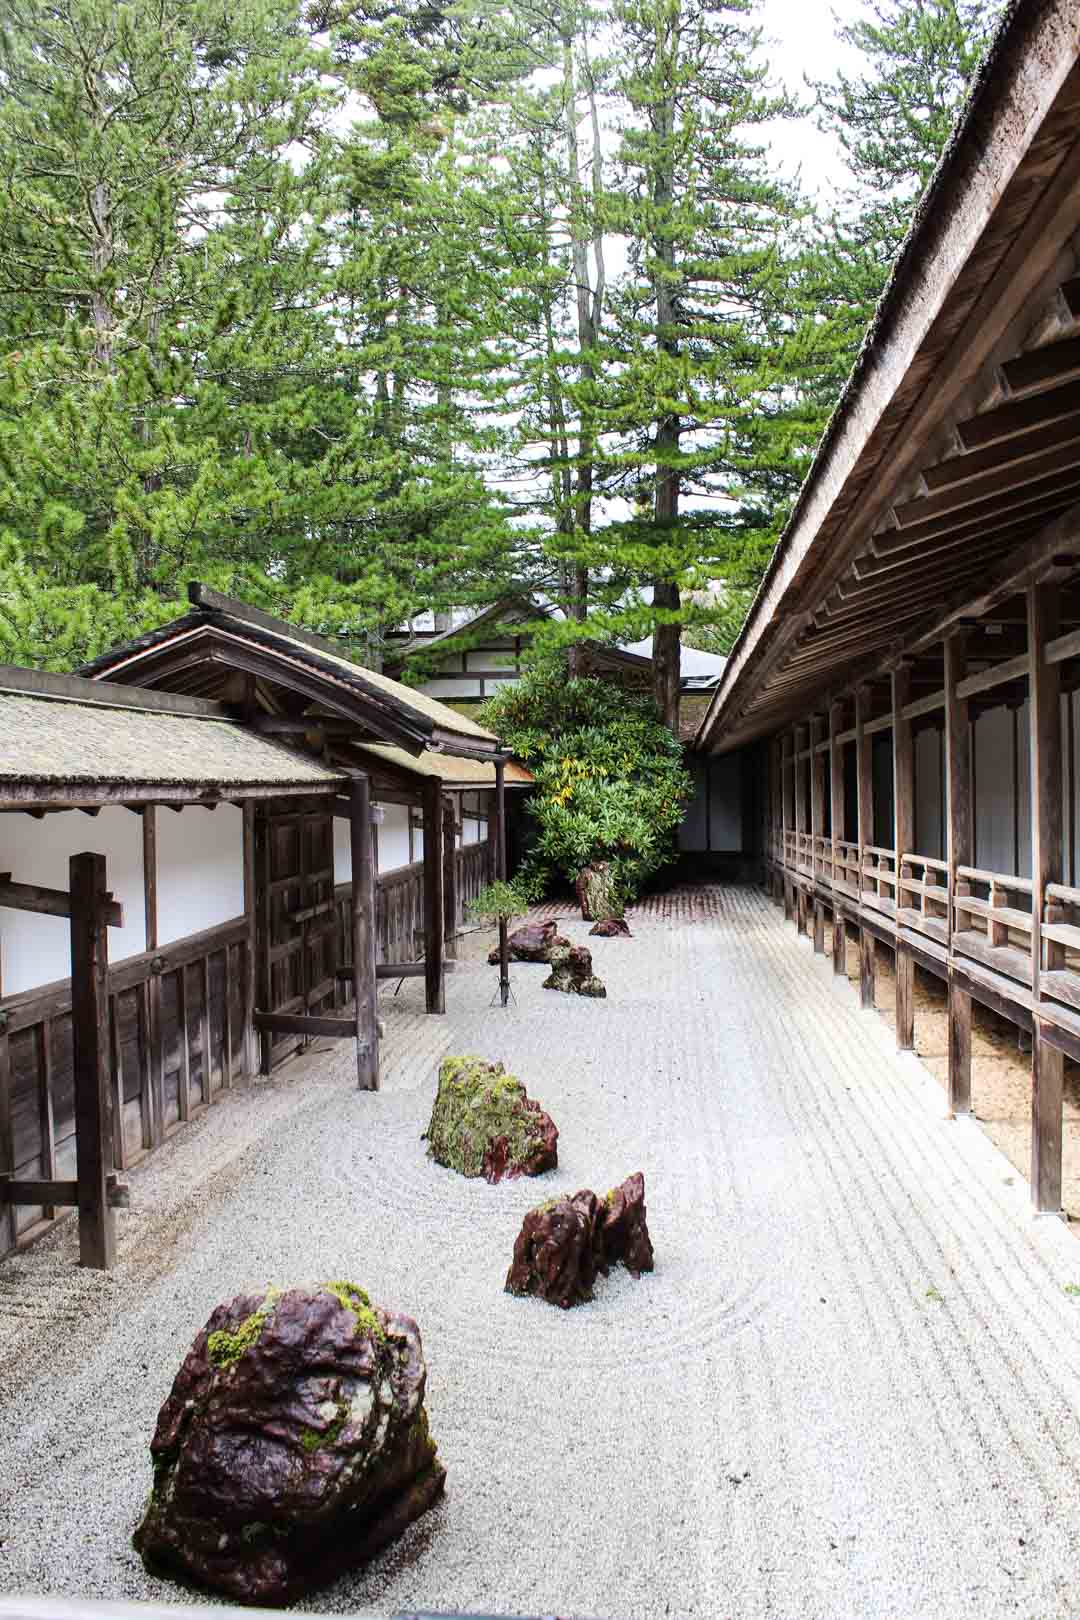 japanilainen kivipuutarha buddhalaiskylässä, Koyasan Japani